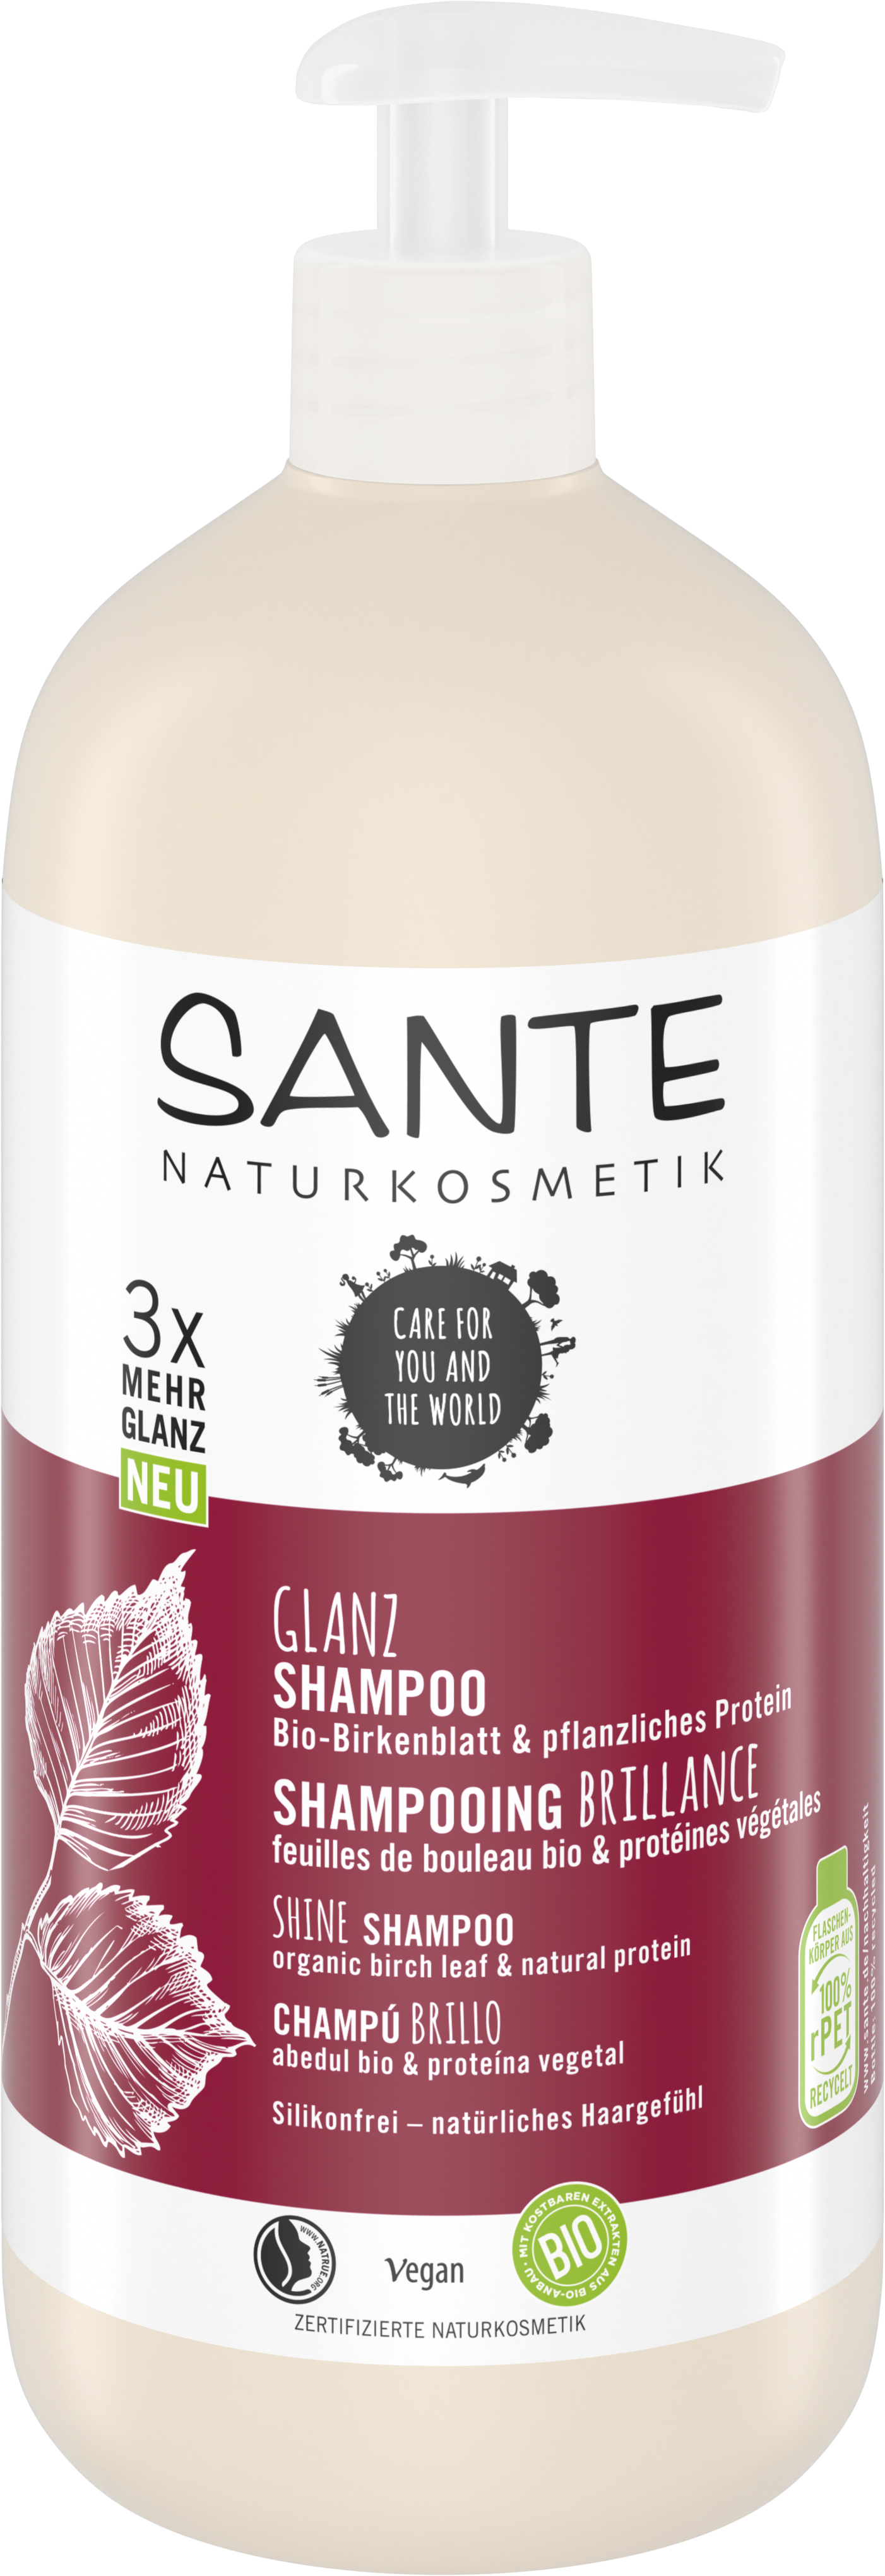 Glanz Shampoo Protein Bio-Birkenblatt Naturkosmetik SANTE pflanzliches | 